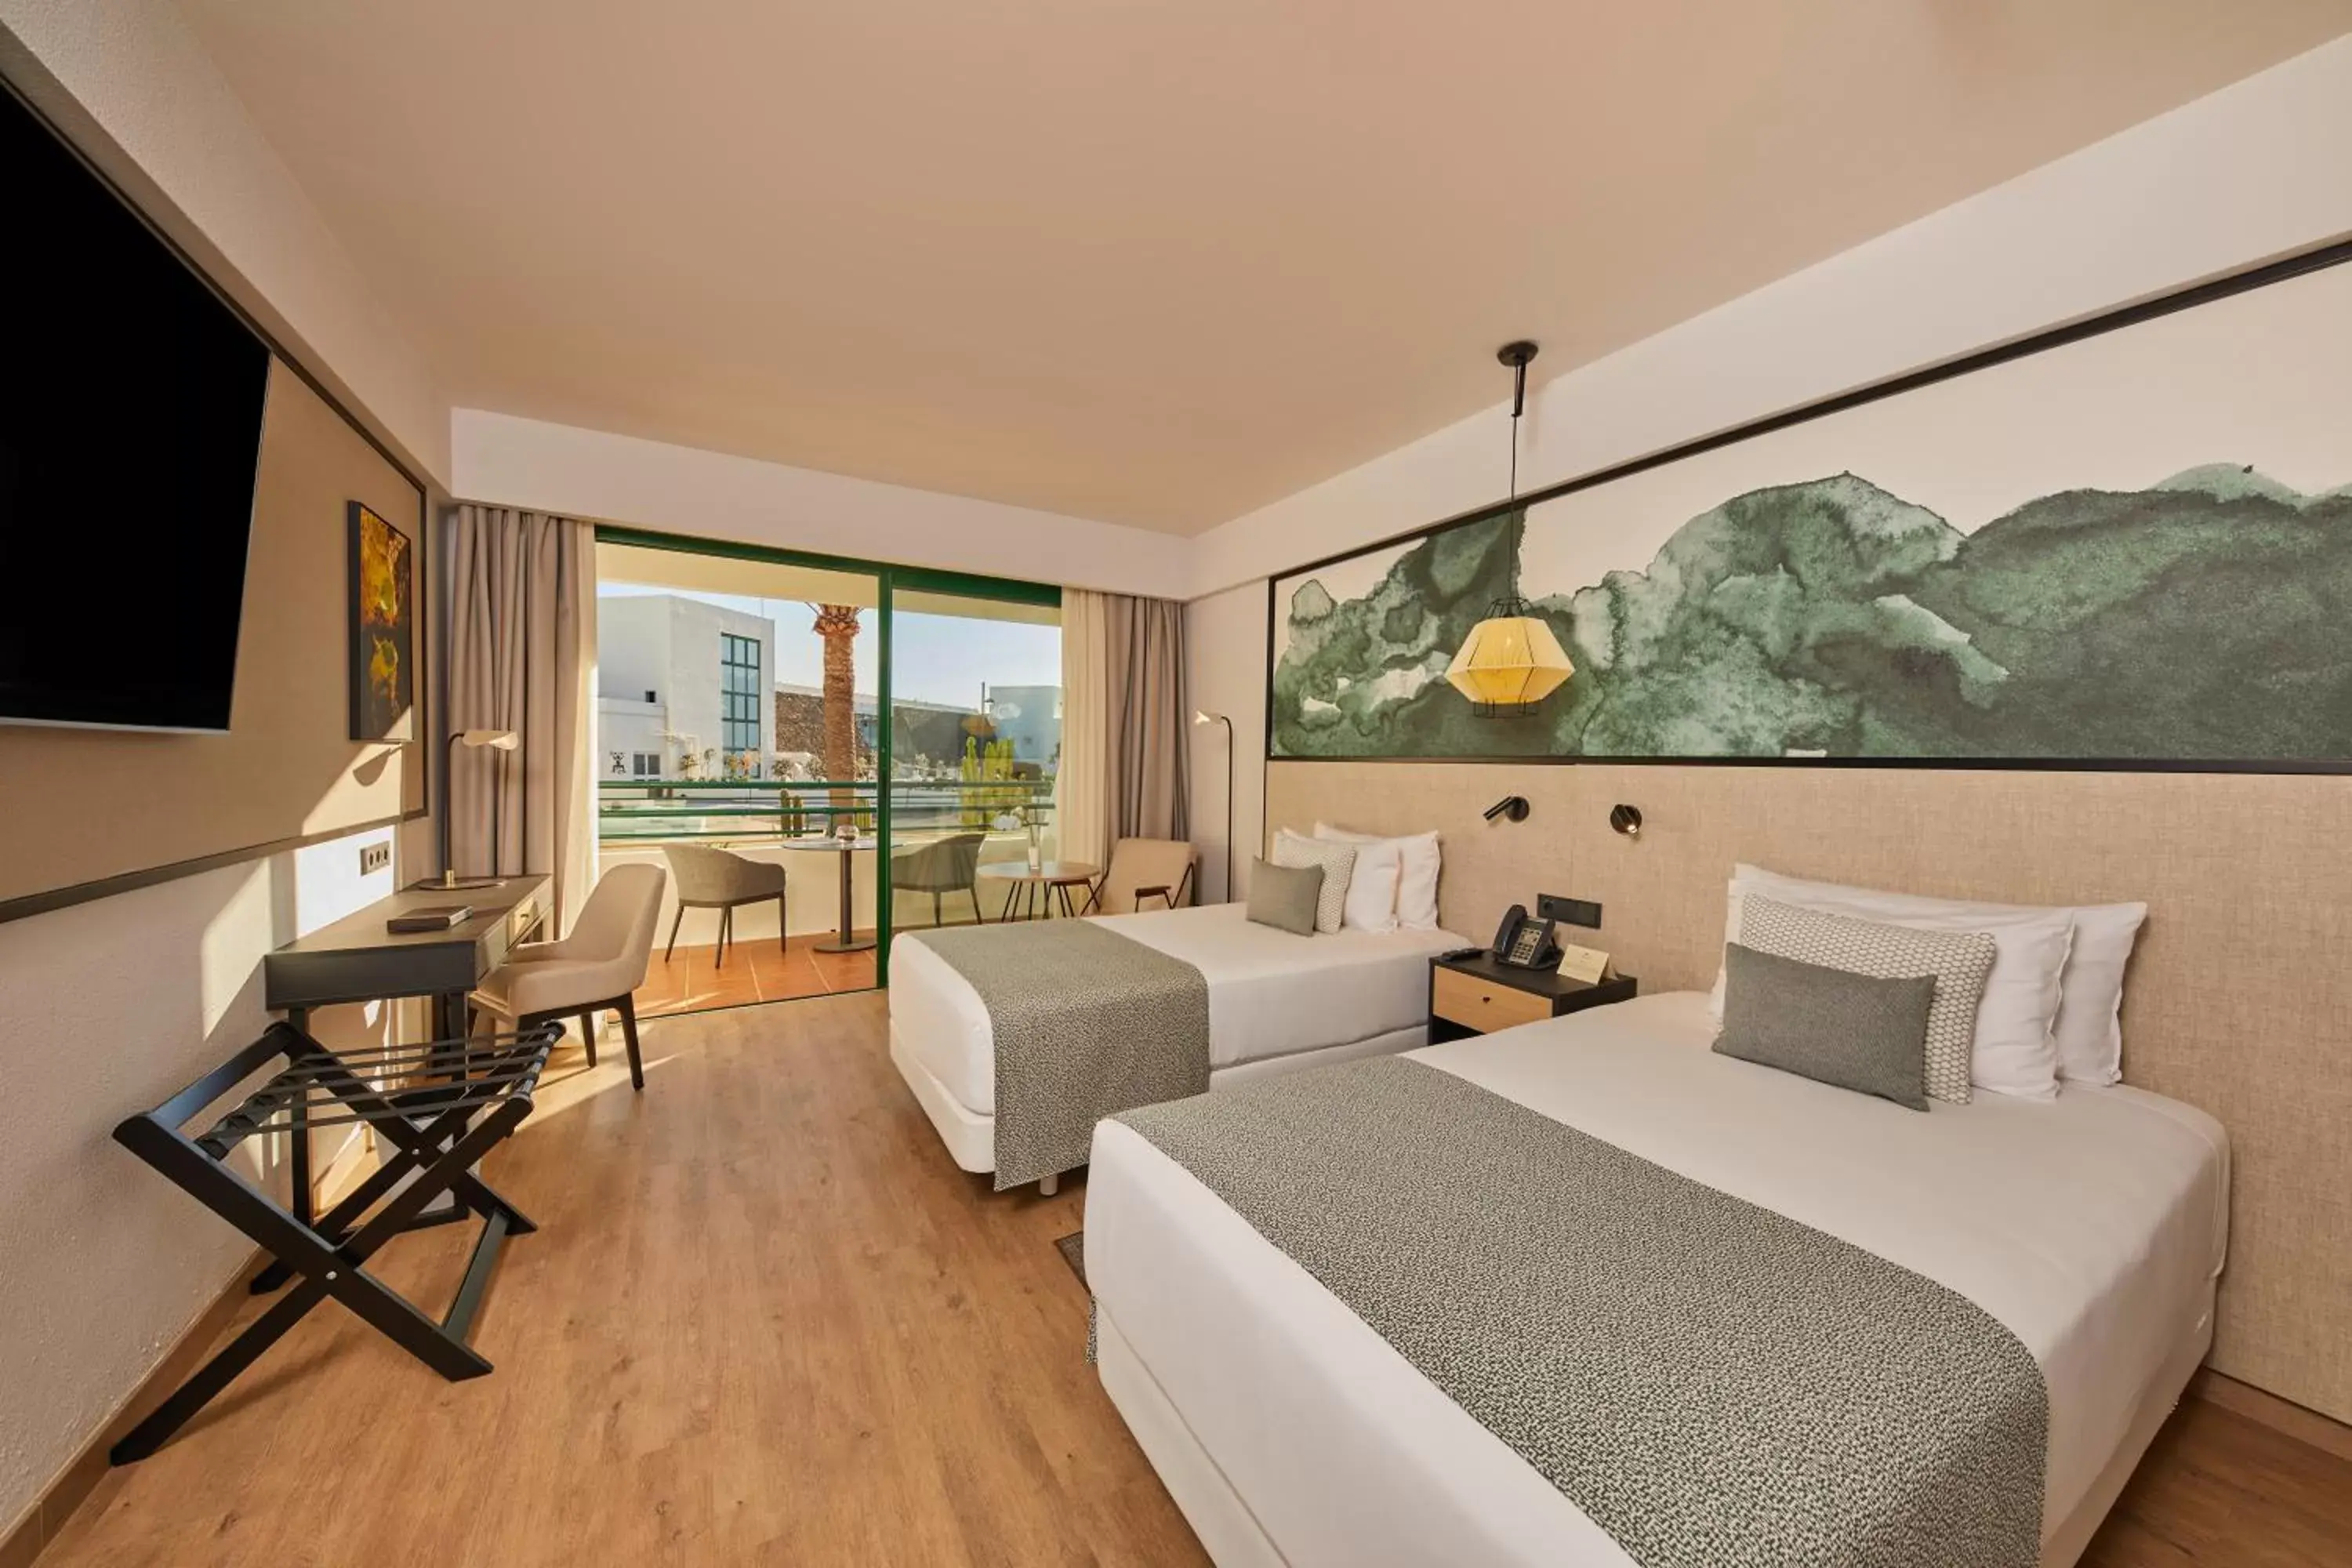 Photo of the whole room in Dreams Lanzarote Playa Dorada Resort & Spa